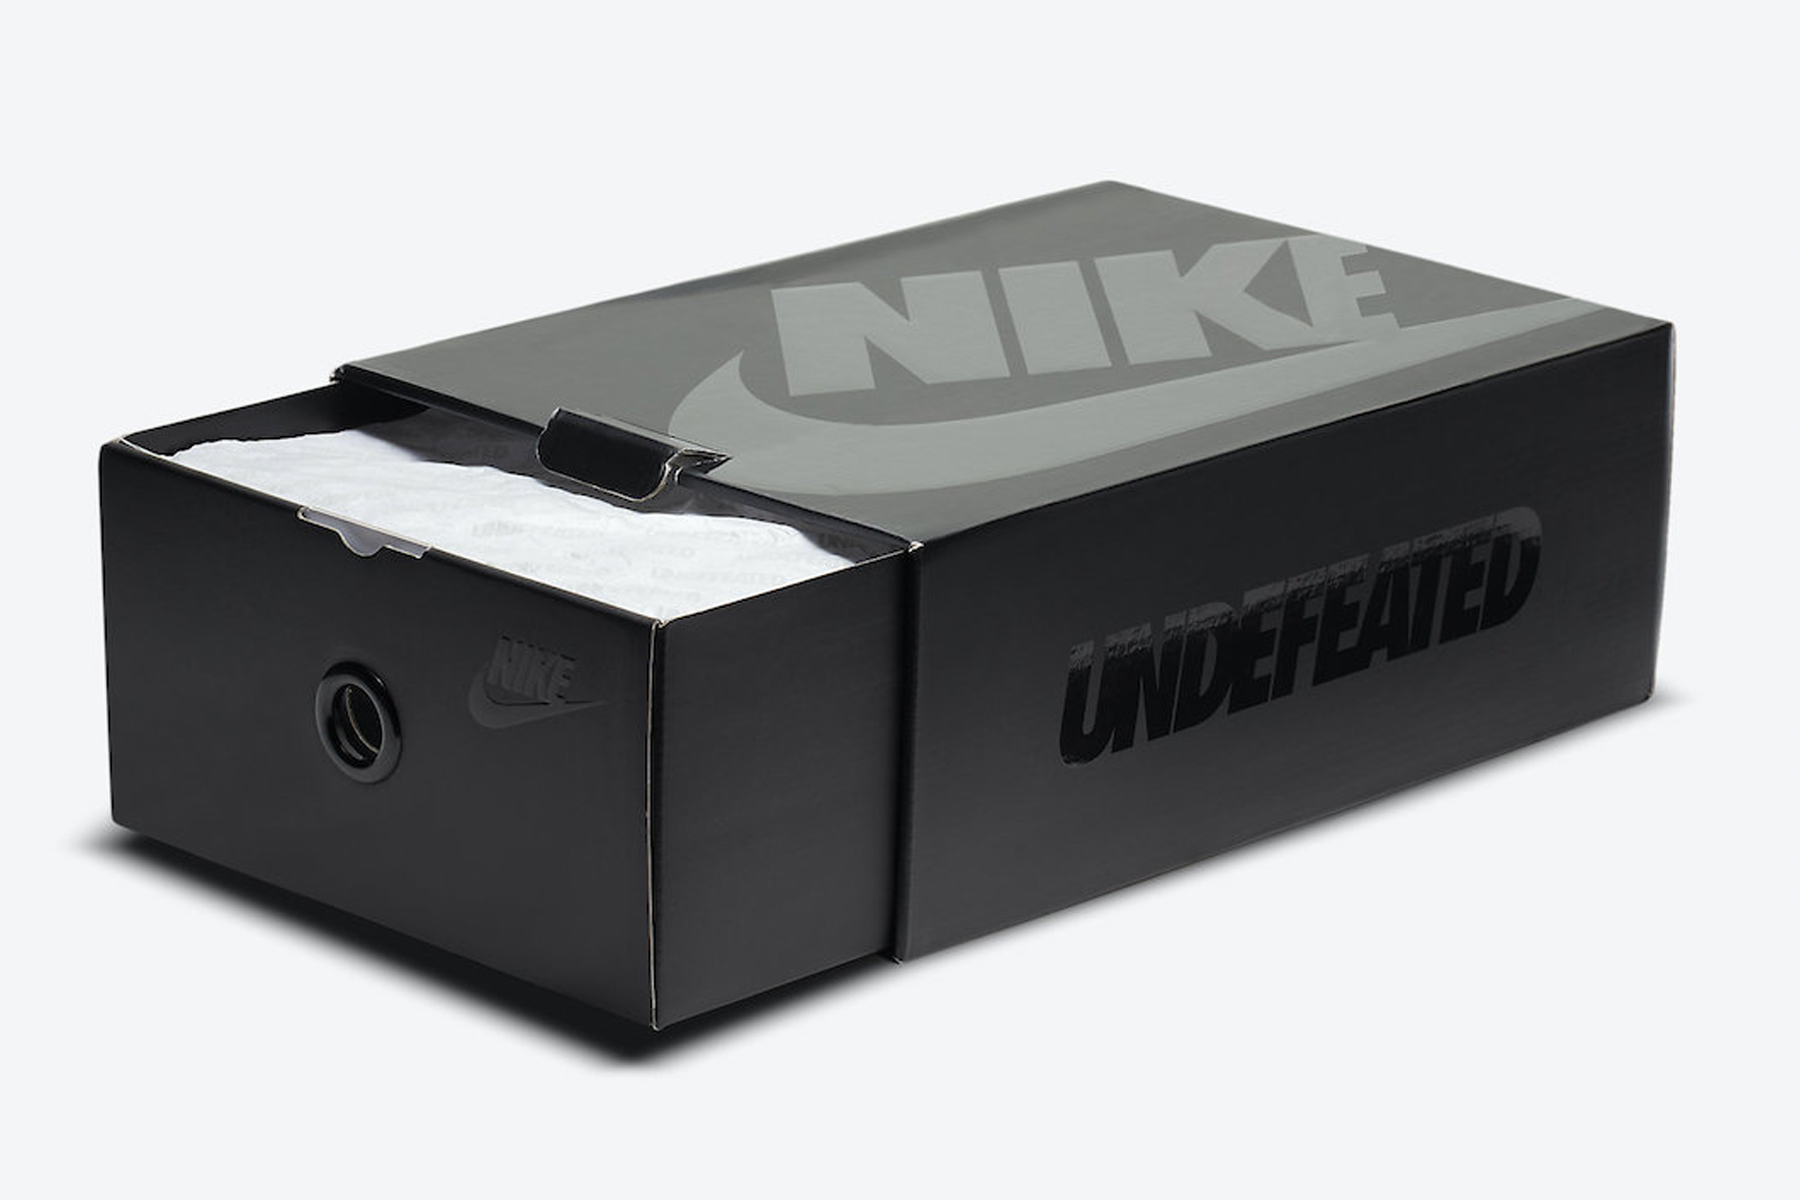 UNDEFEATED x UCLA x Nike Air Max 97 全新联名鞋款官方图辑、发售日期 